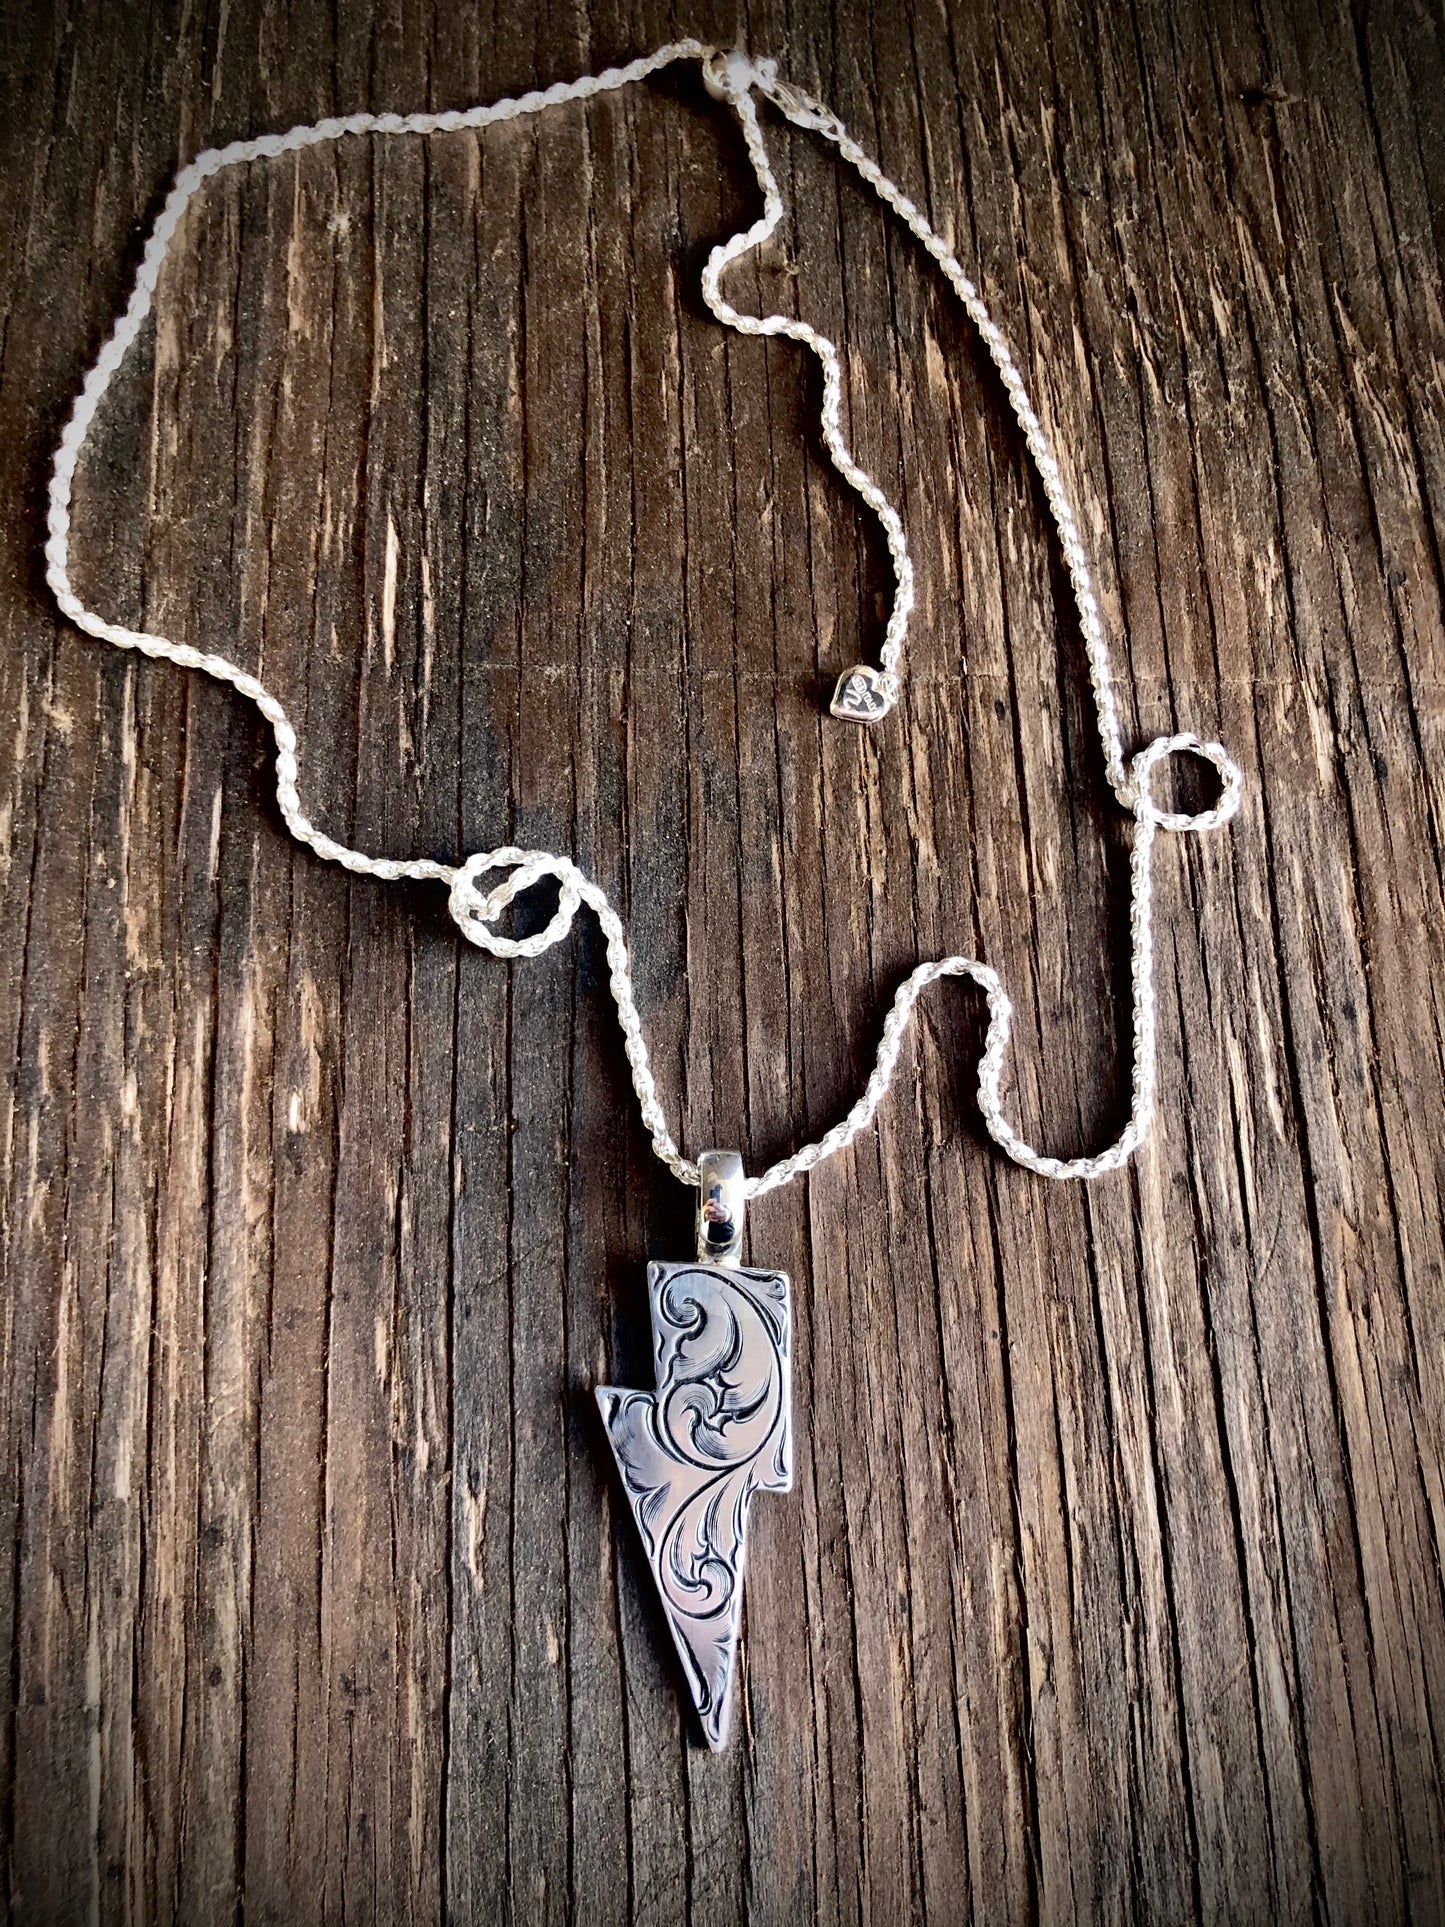 Custom Lightning bolt necklace